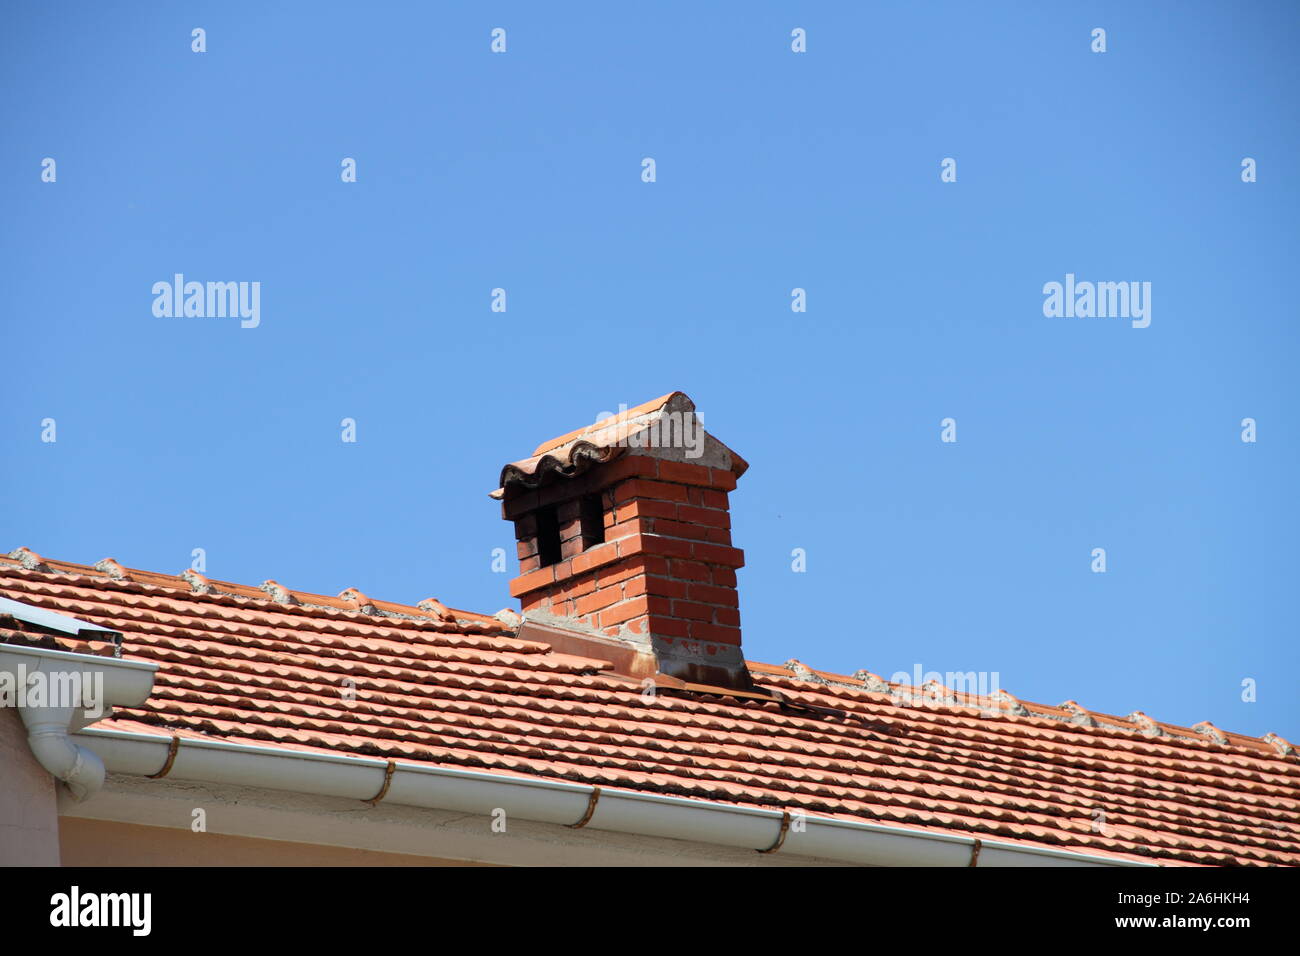 Einen gemauerten Schornstein auf dem Dach Stockfotografie - Alamy